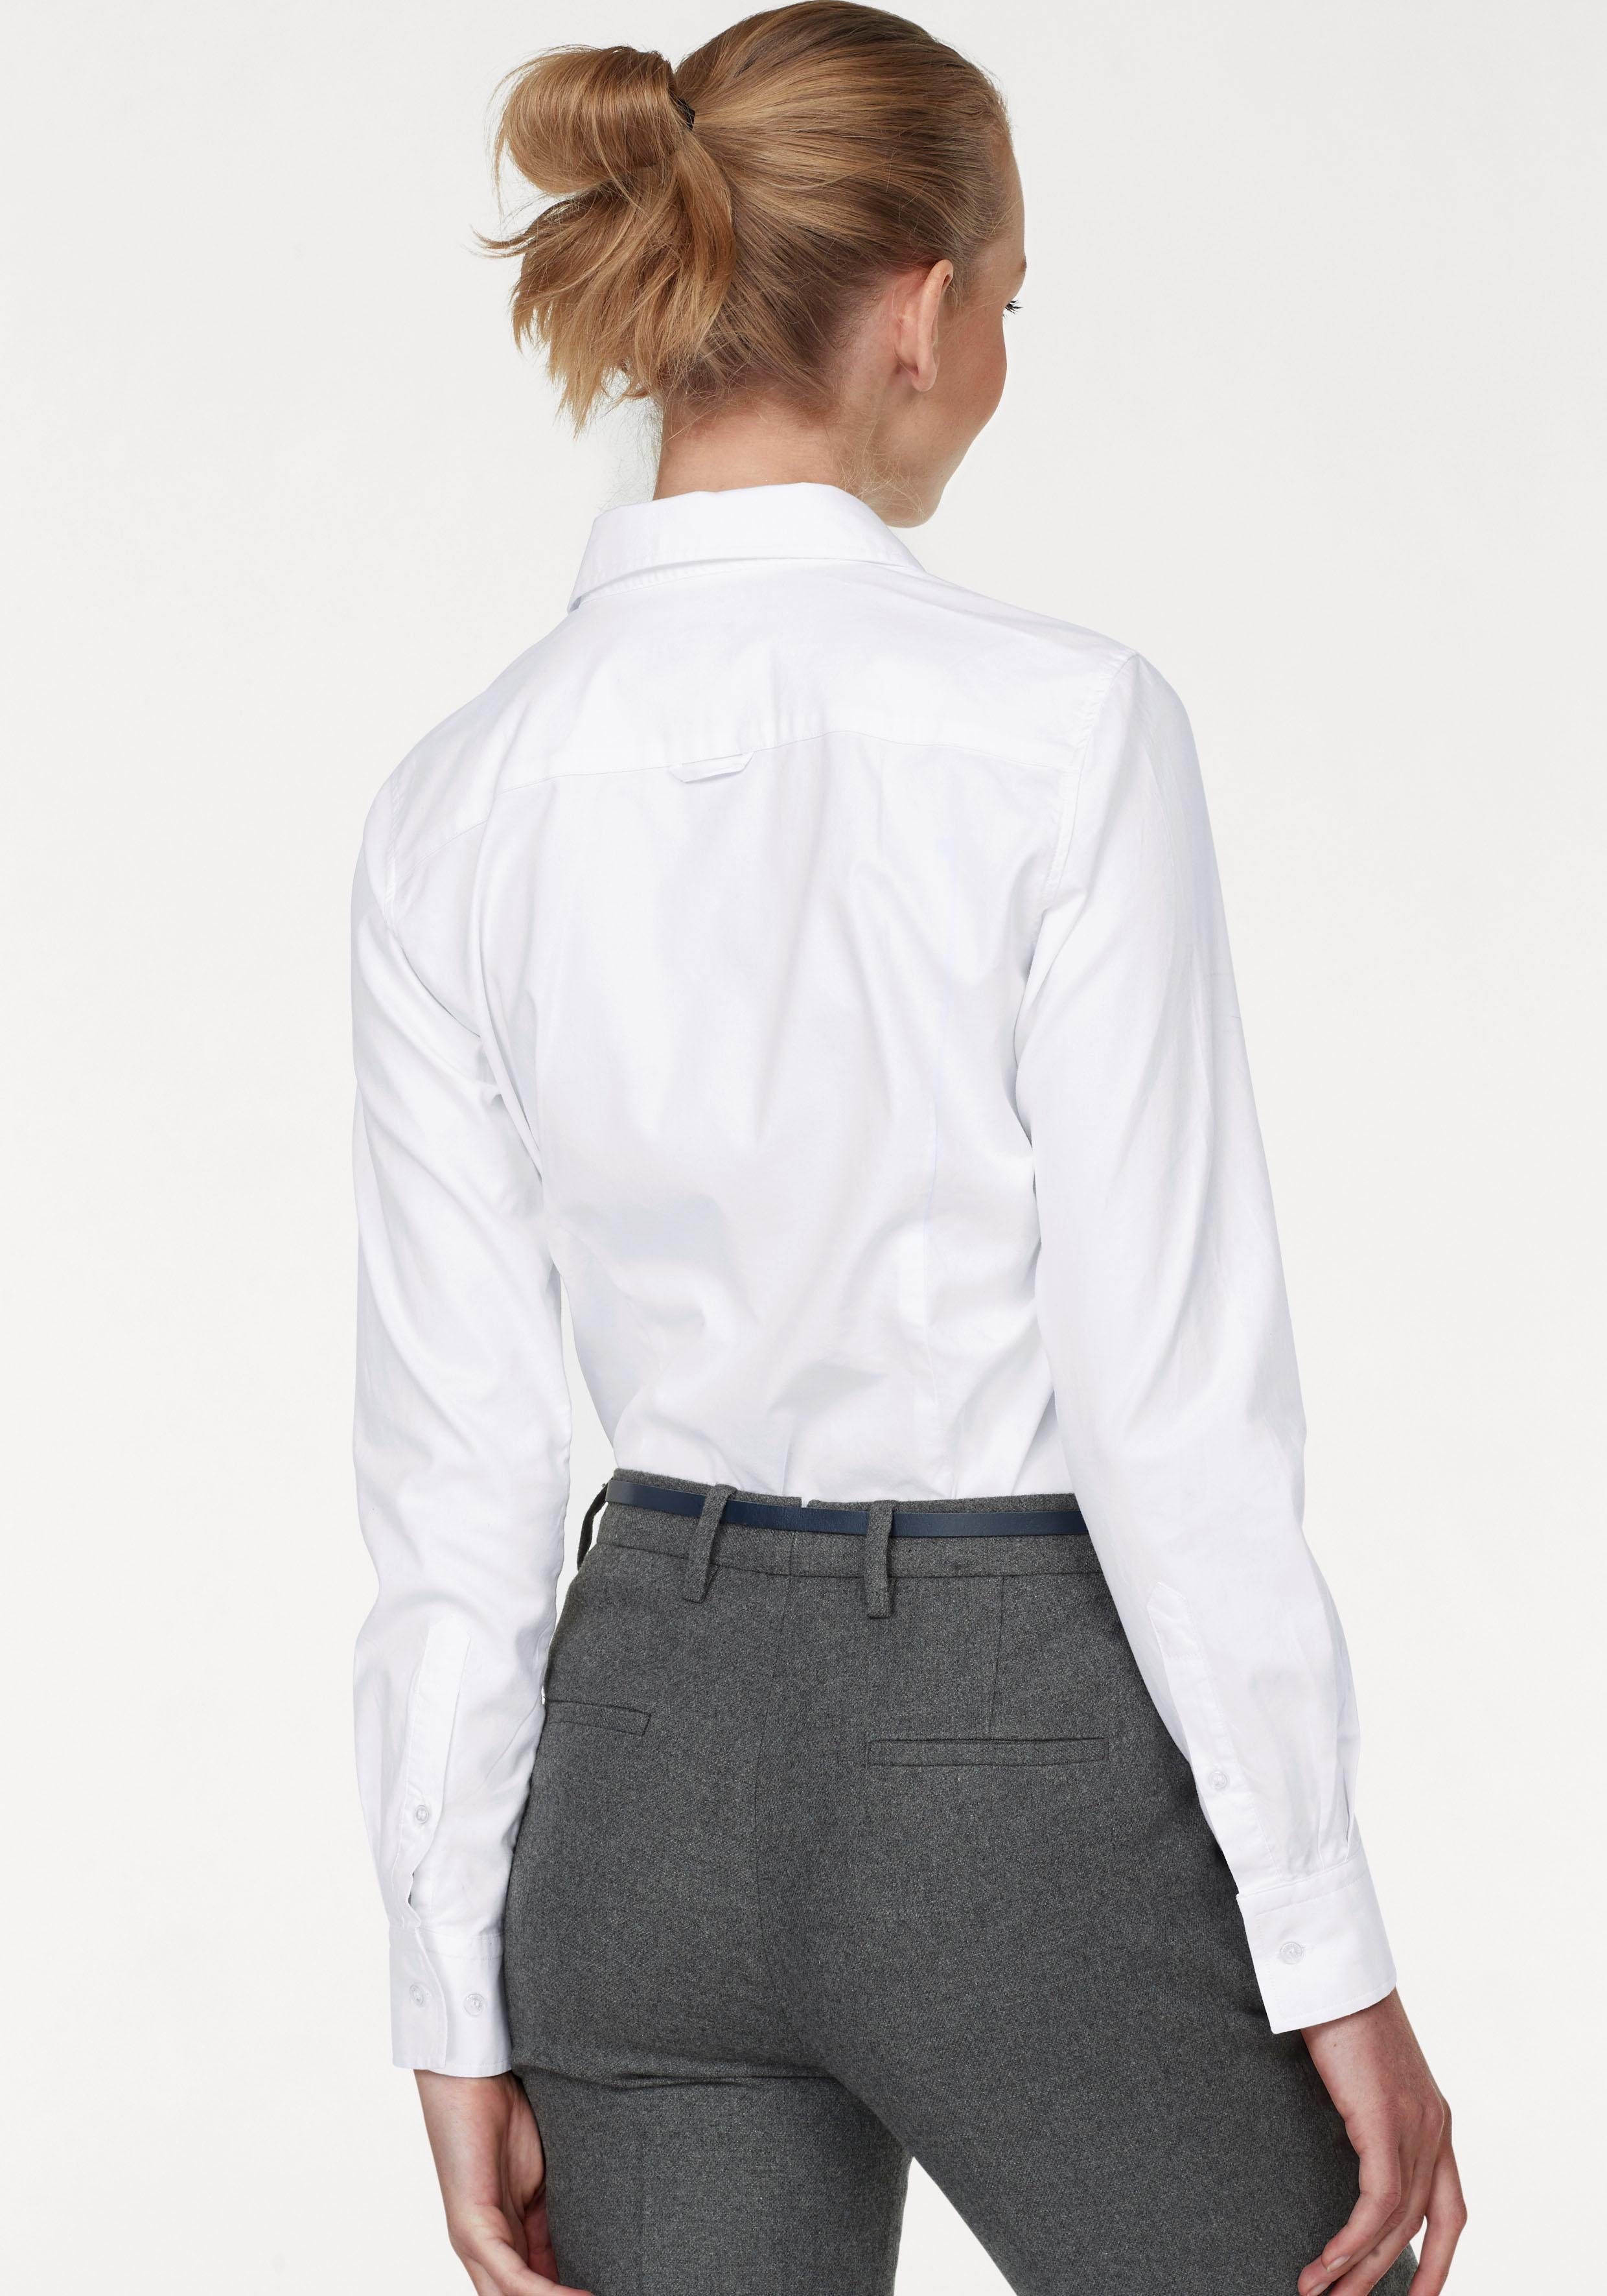 Gant Hemdbluse Stretch-Oxford-Stoff für Sitz bequemen u. white Bewegungsfreiheit